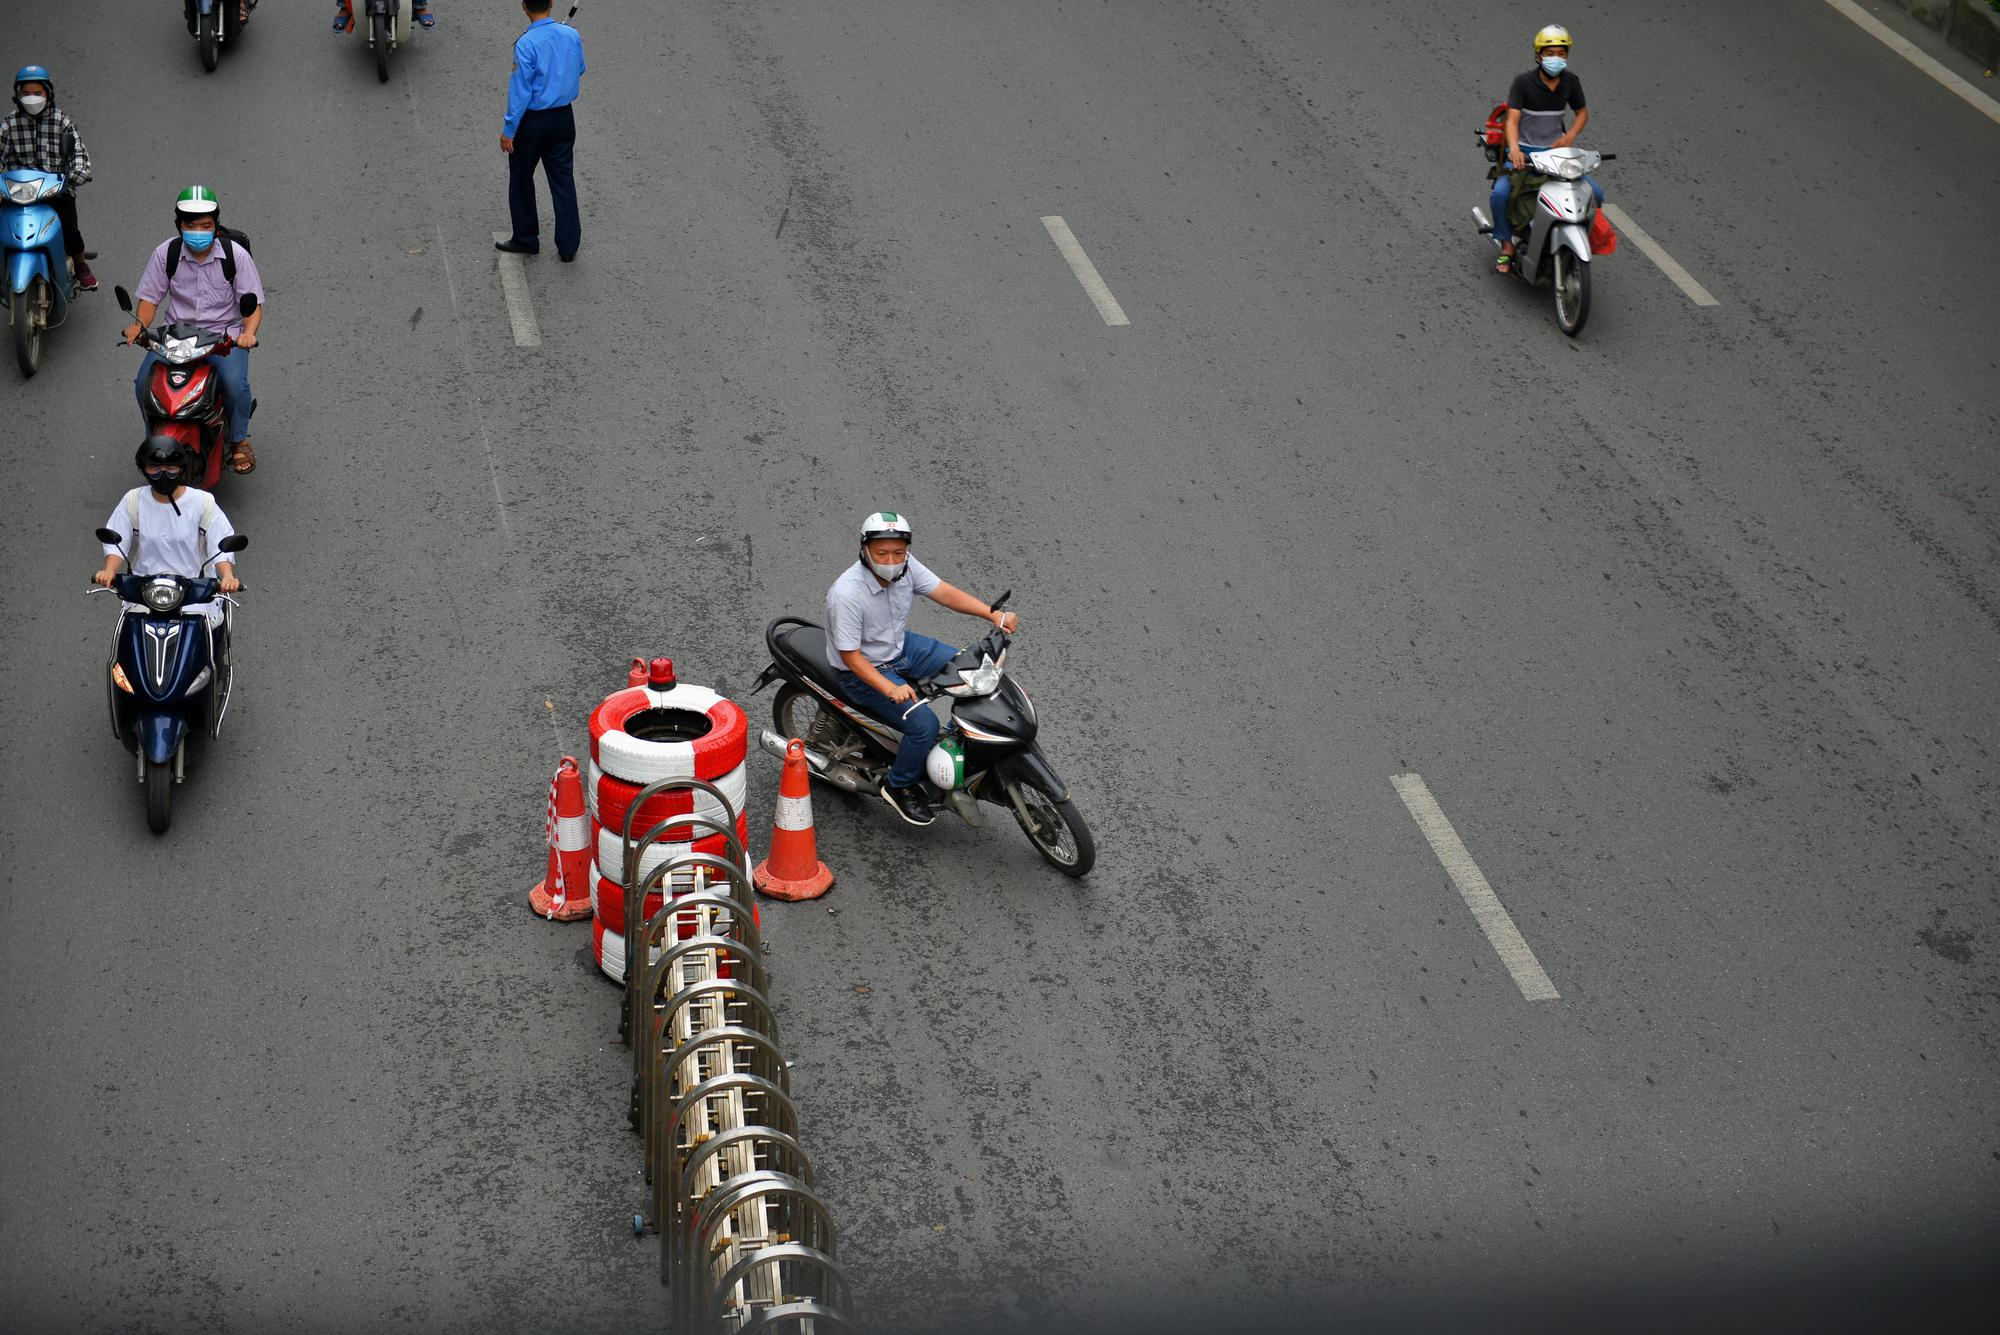 Ngày đầu Hà Nội phân làn đường Nguyễn Trãi: Giao thông hỗn loạn, nhiều người gặp tai nạn vì đâm vào dải phân cách - Ảnh 5.